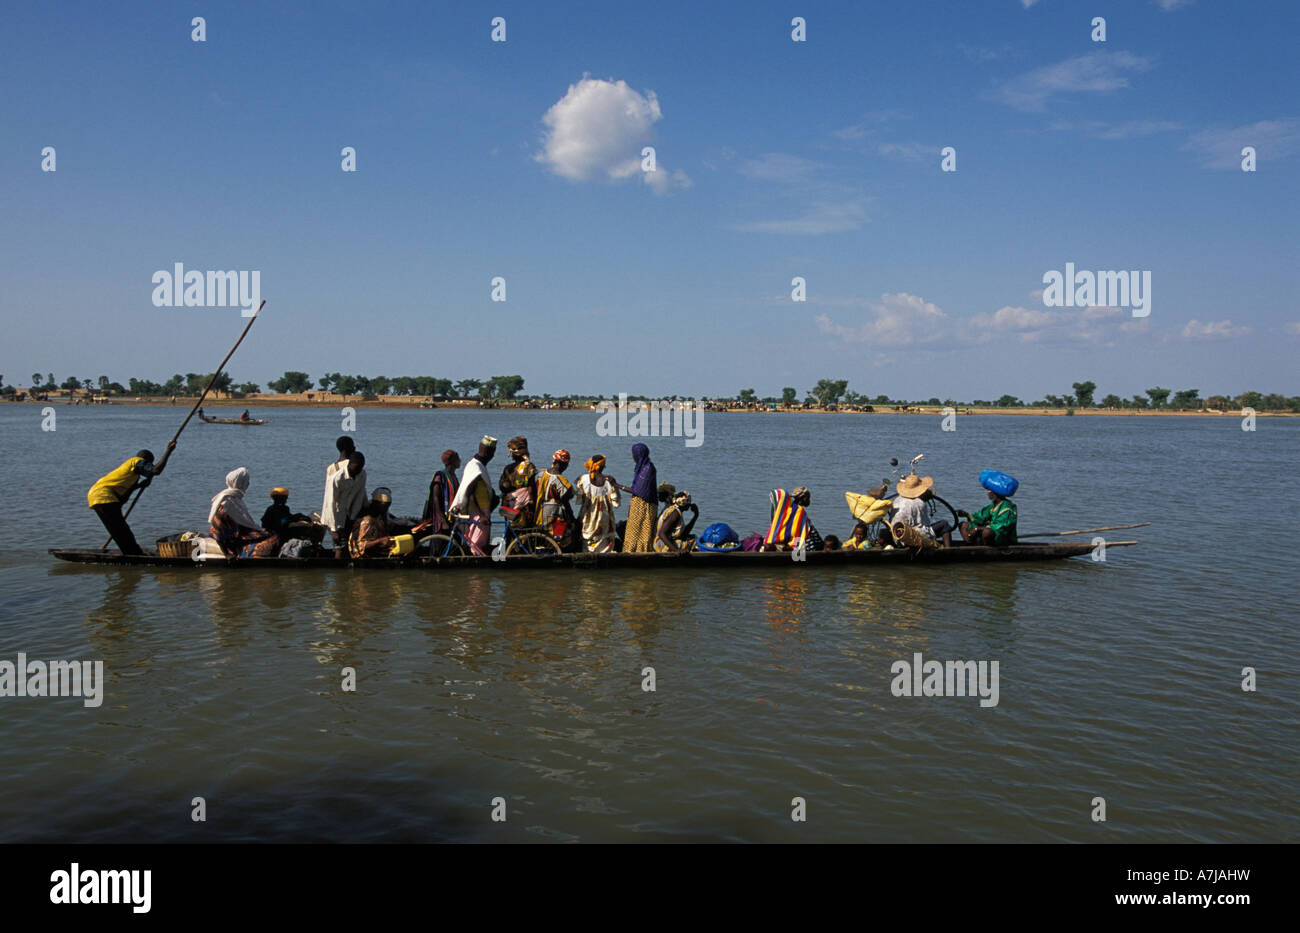 Djenné è situato su un'isola nel Niger Inland Delta. Persone attraversano l'acqua per i villaggi circostanti in piroga, Mali Foto Stock